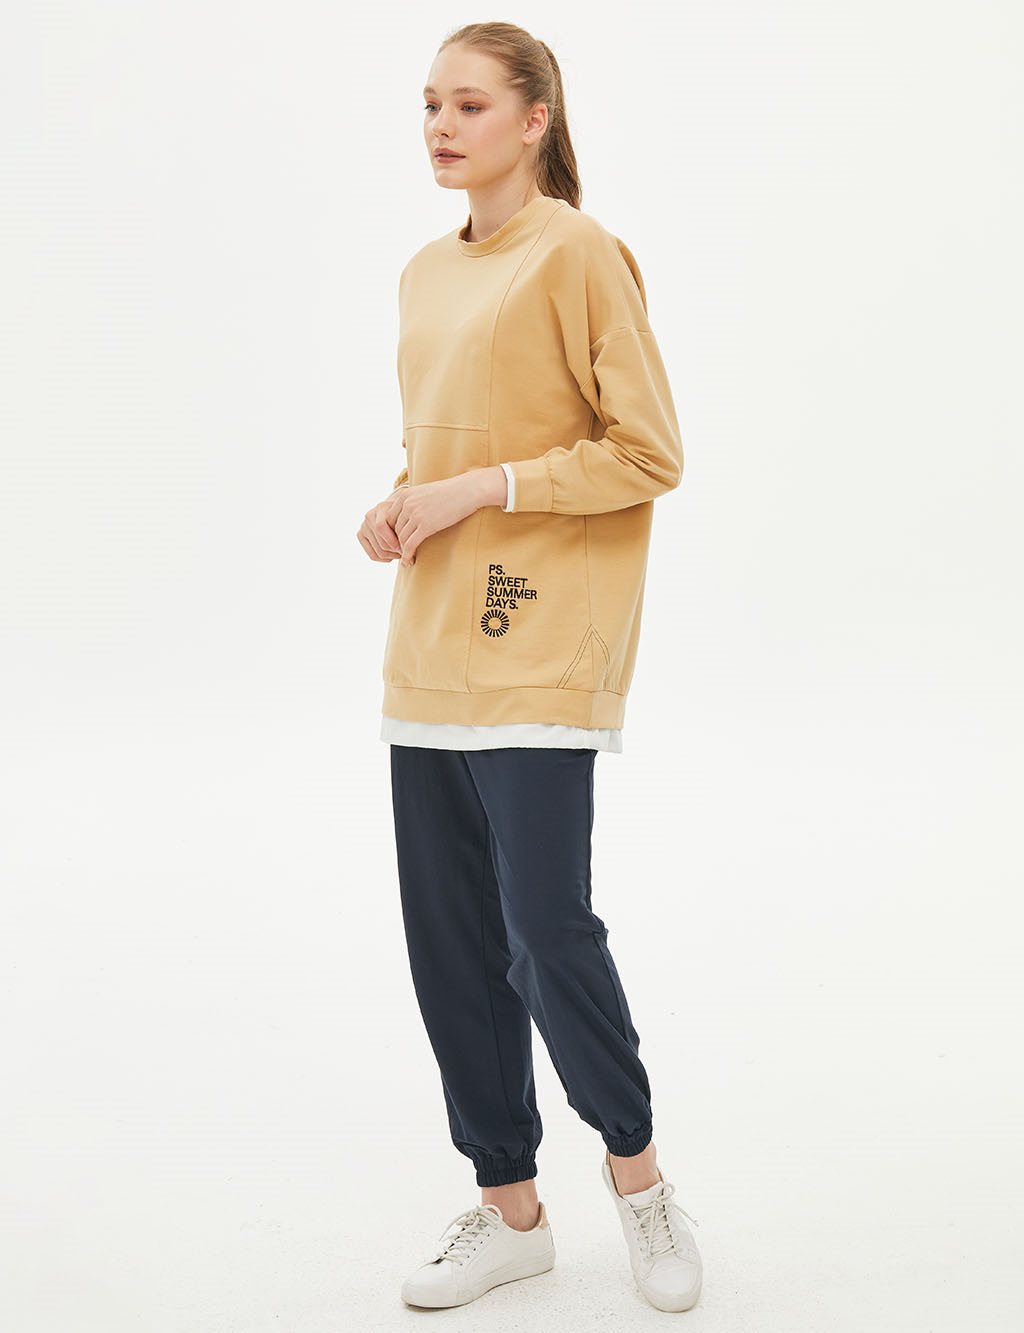 Katman Görünümlü Parçalı Sweatshirt Bej 